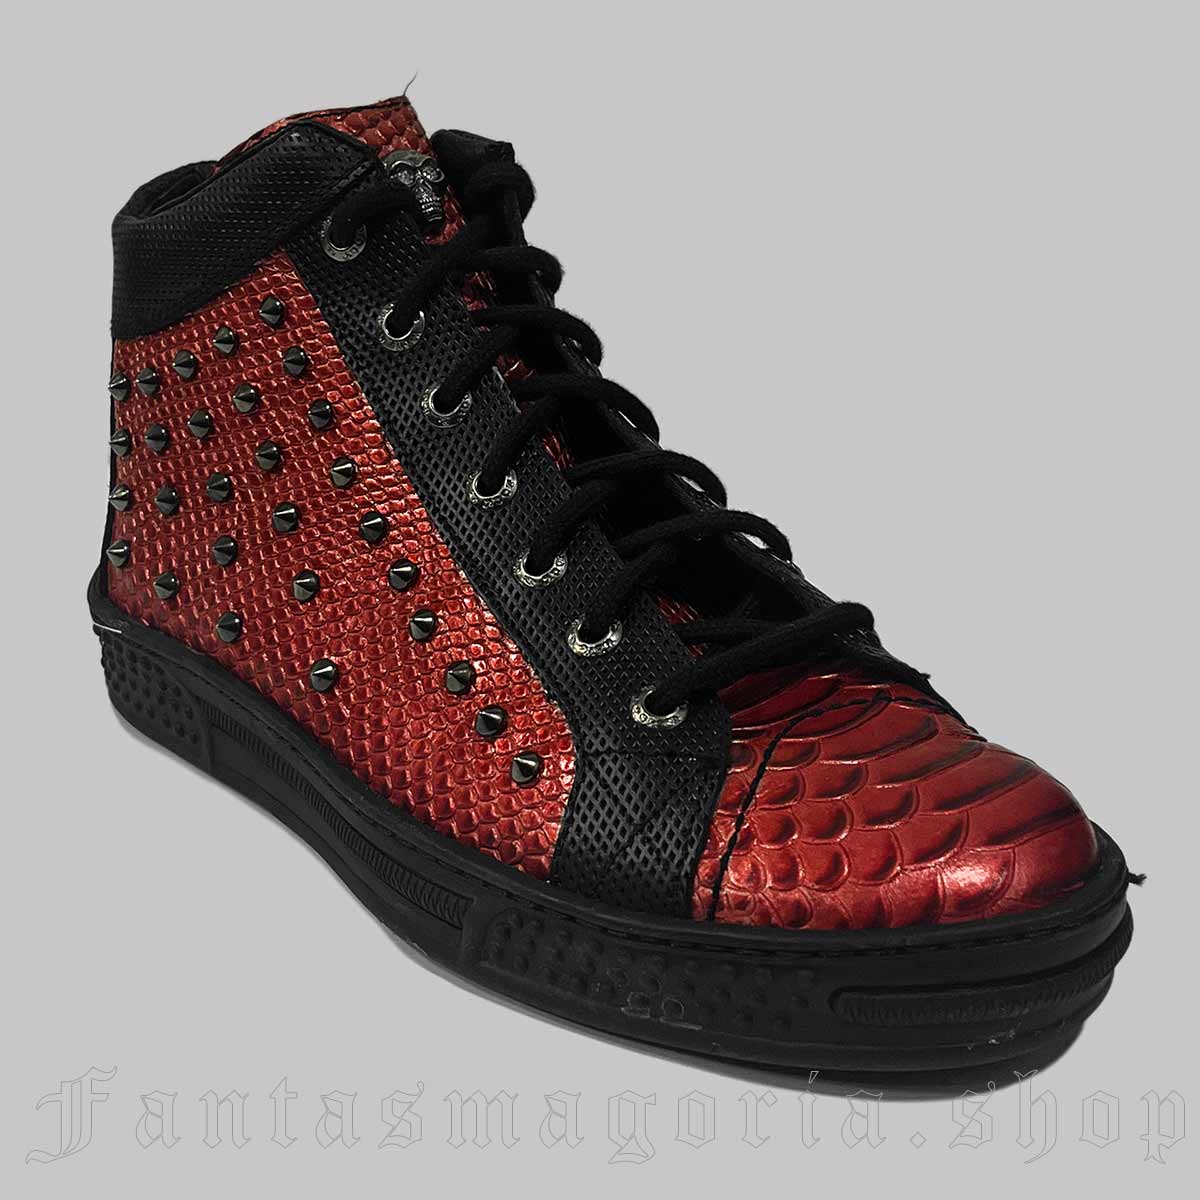 Women's Punk red snake skin pattern spike studs sneakers. - New Rock - PS021-S6